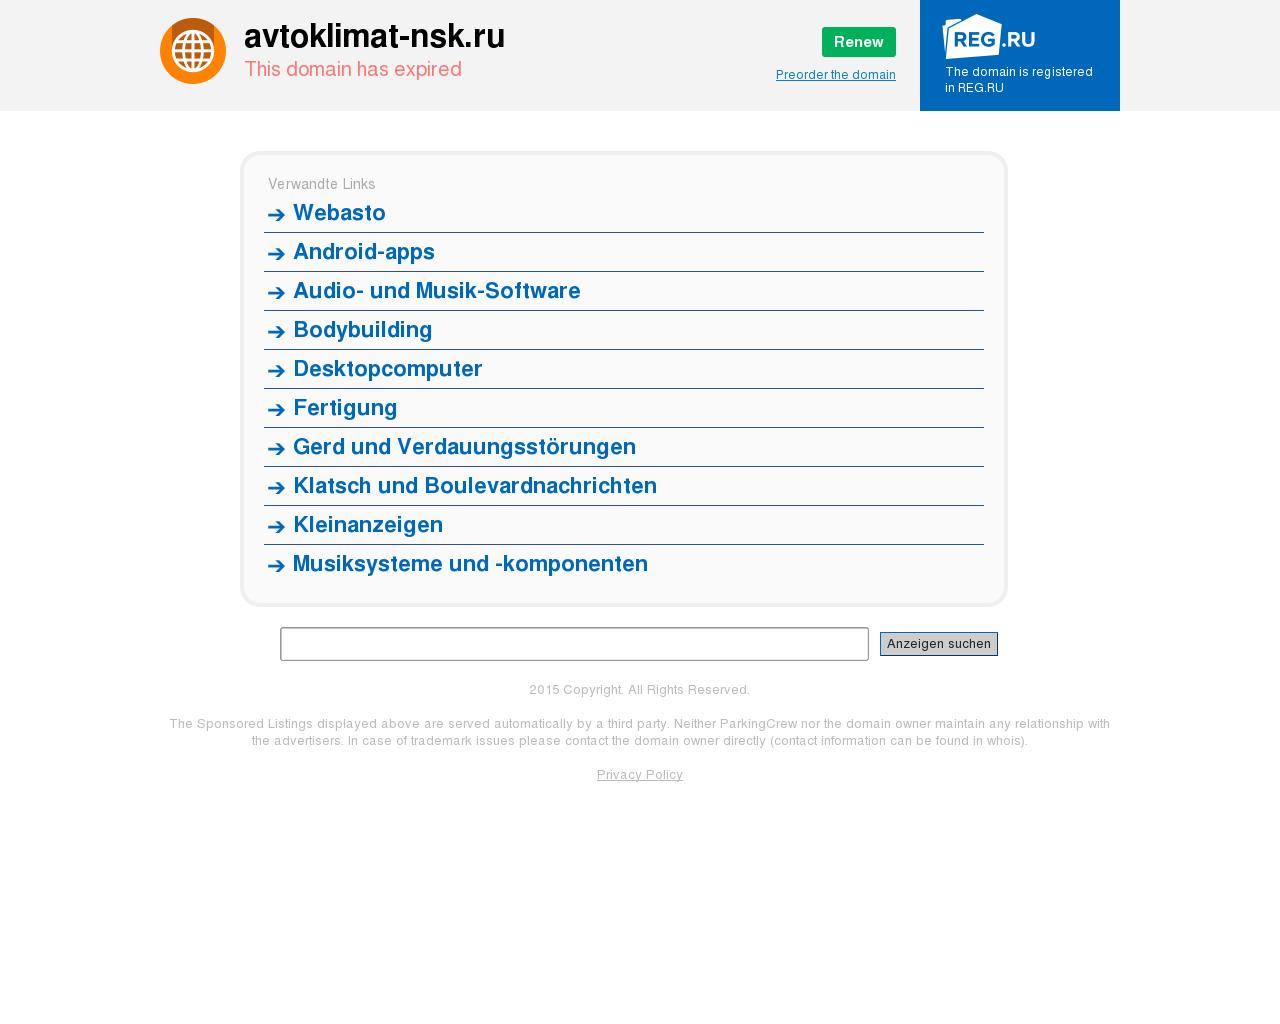 Изображение сайта avtoklimat-nsk.ru в разрешении 1280x1024